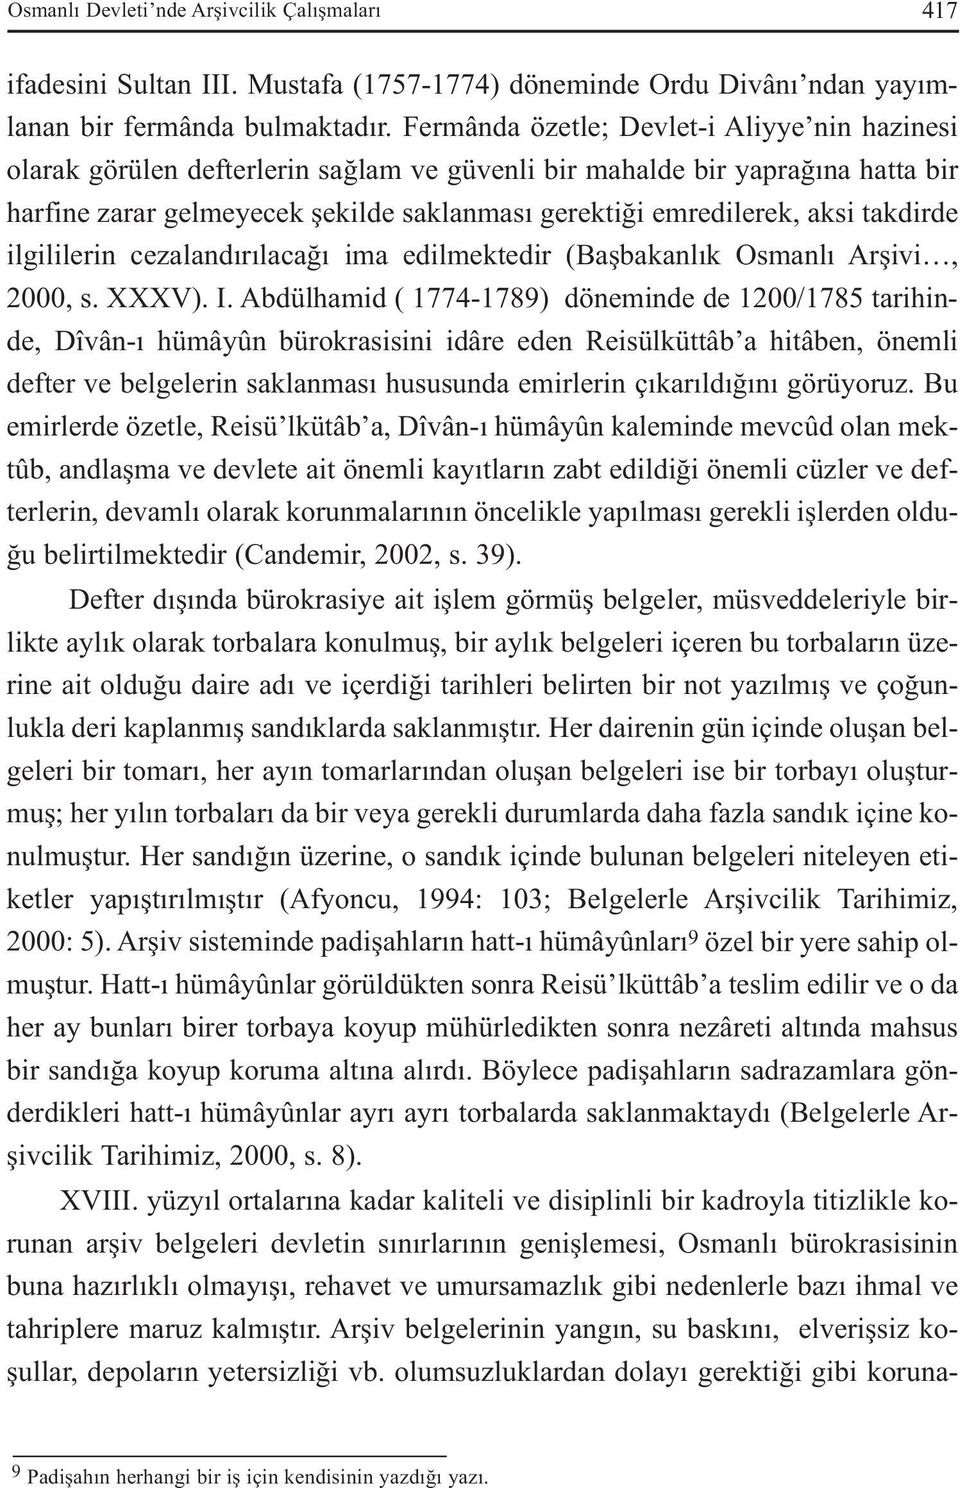 takdirde ilgililerin cezalandırılacağı ima edilmektedir (Başbakanlık Osmanlı Arşivi, 2000, s. XXXV). I.